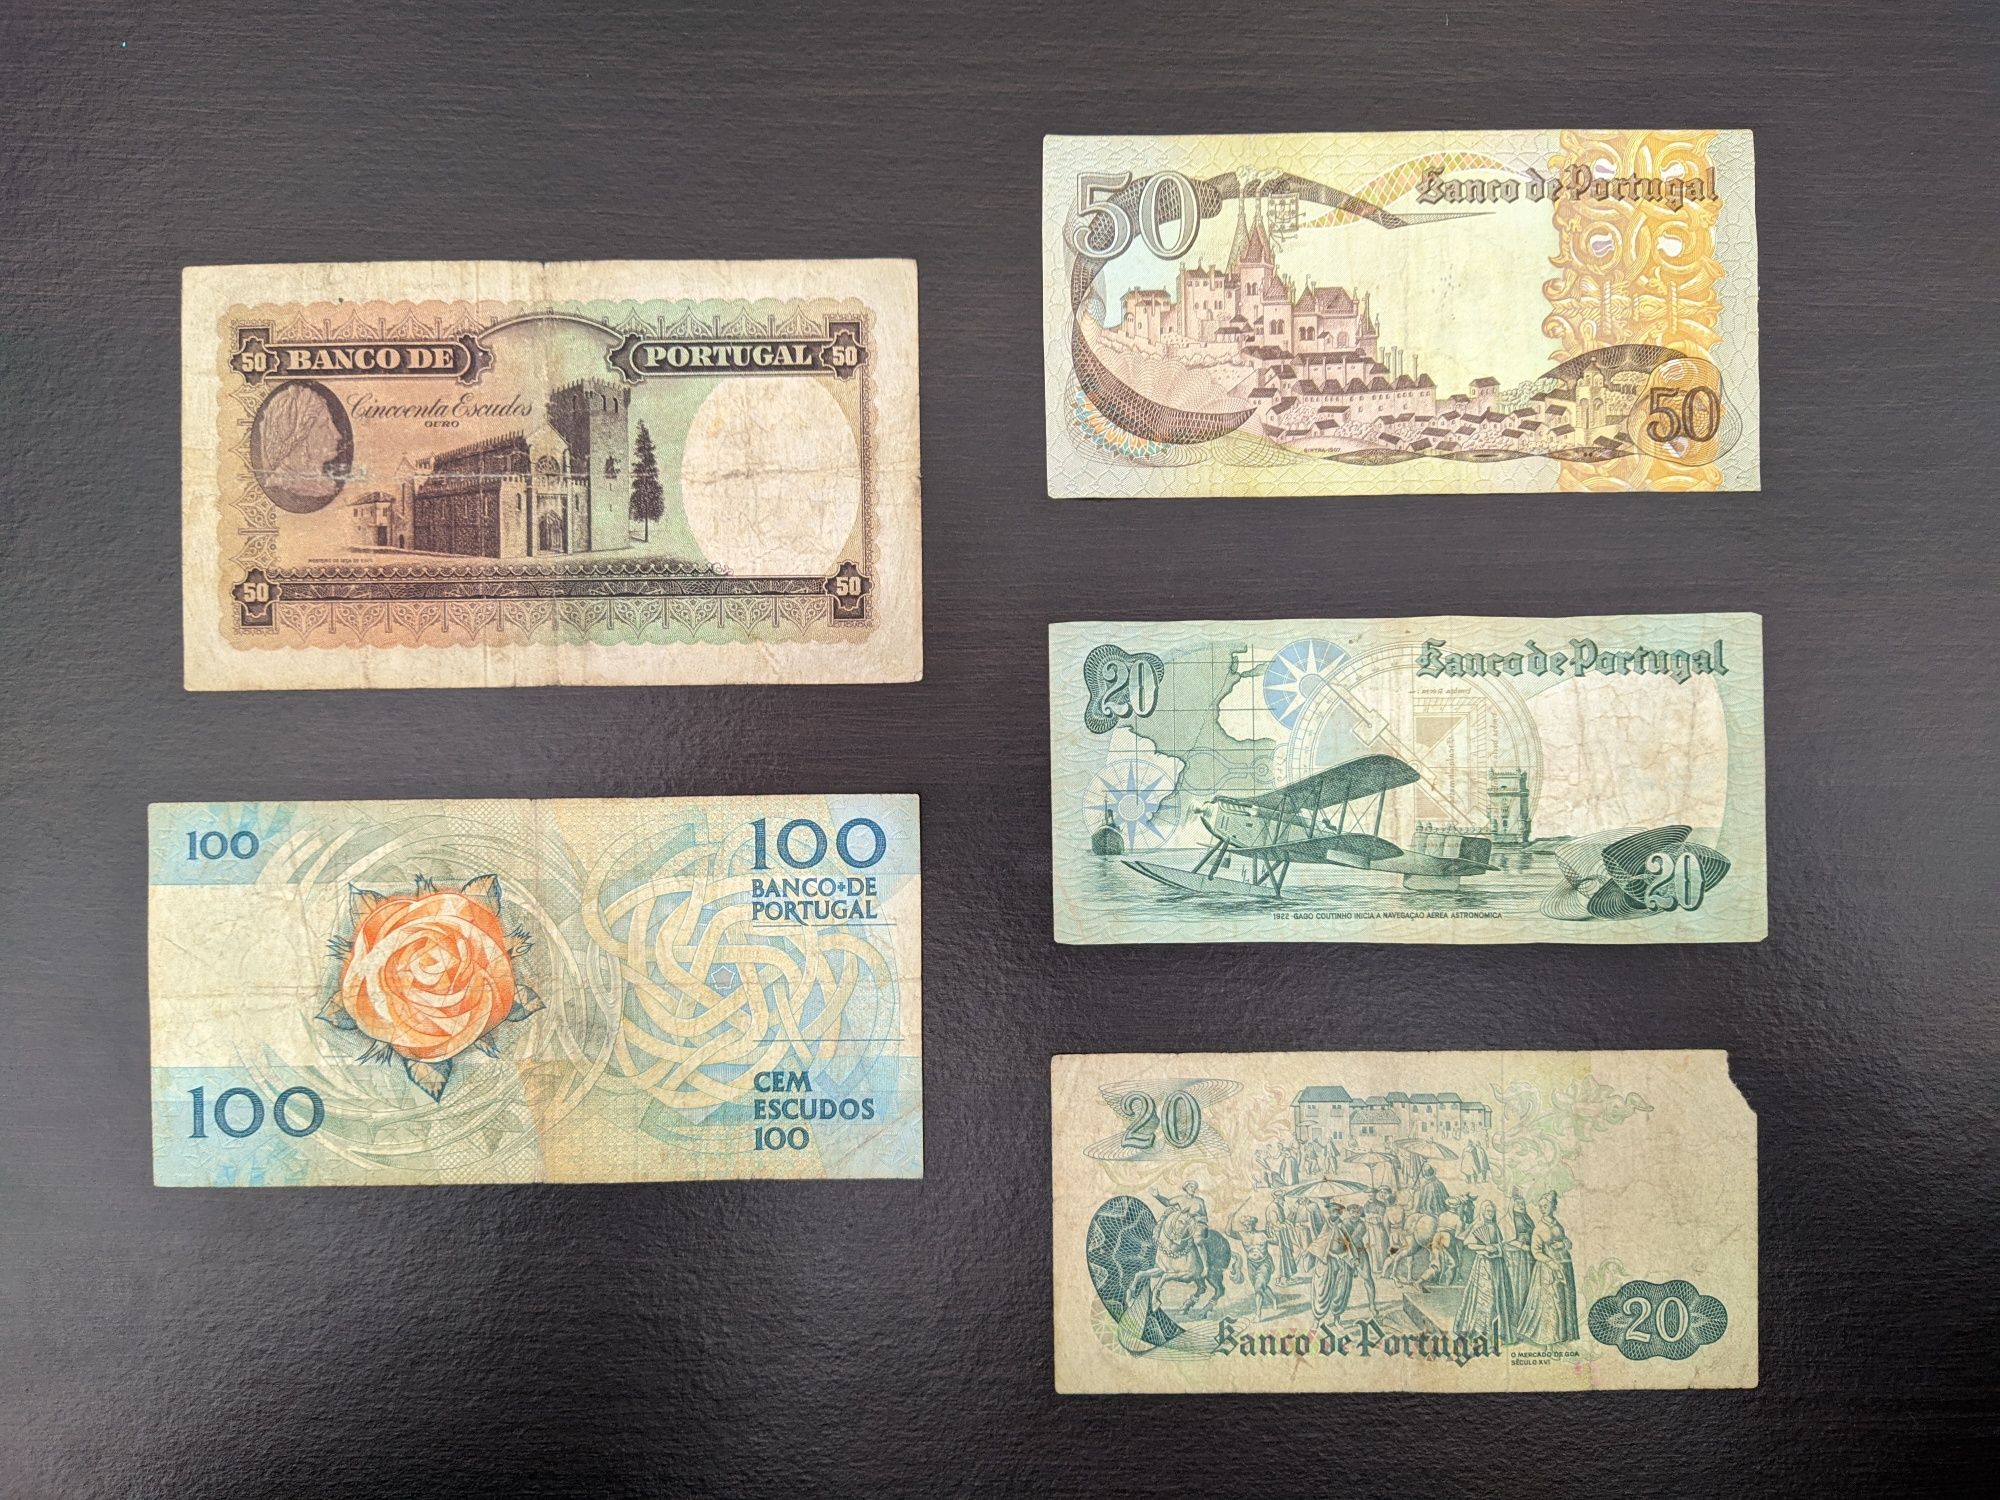 Coleção de notas de Portugal e Angola (Nota de 50 escudos de 1941)